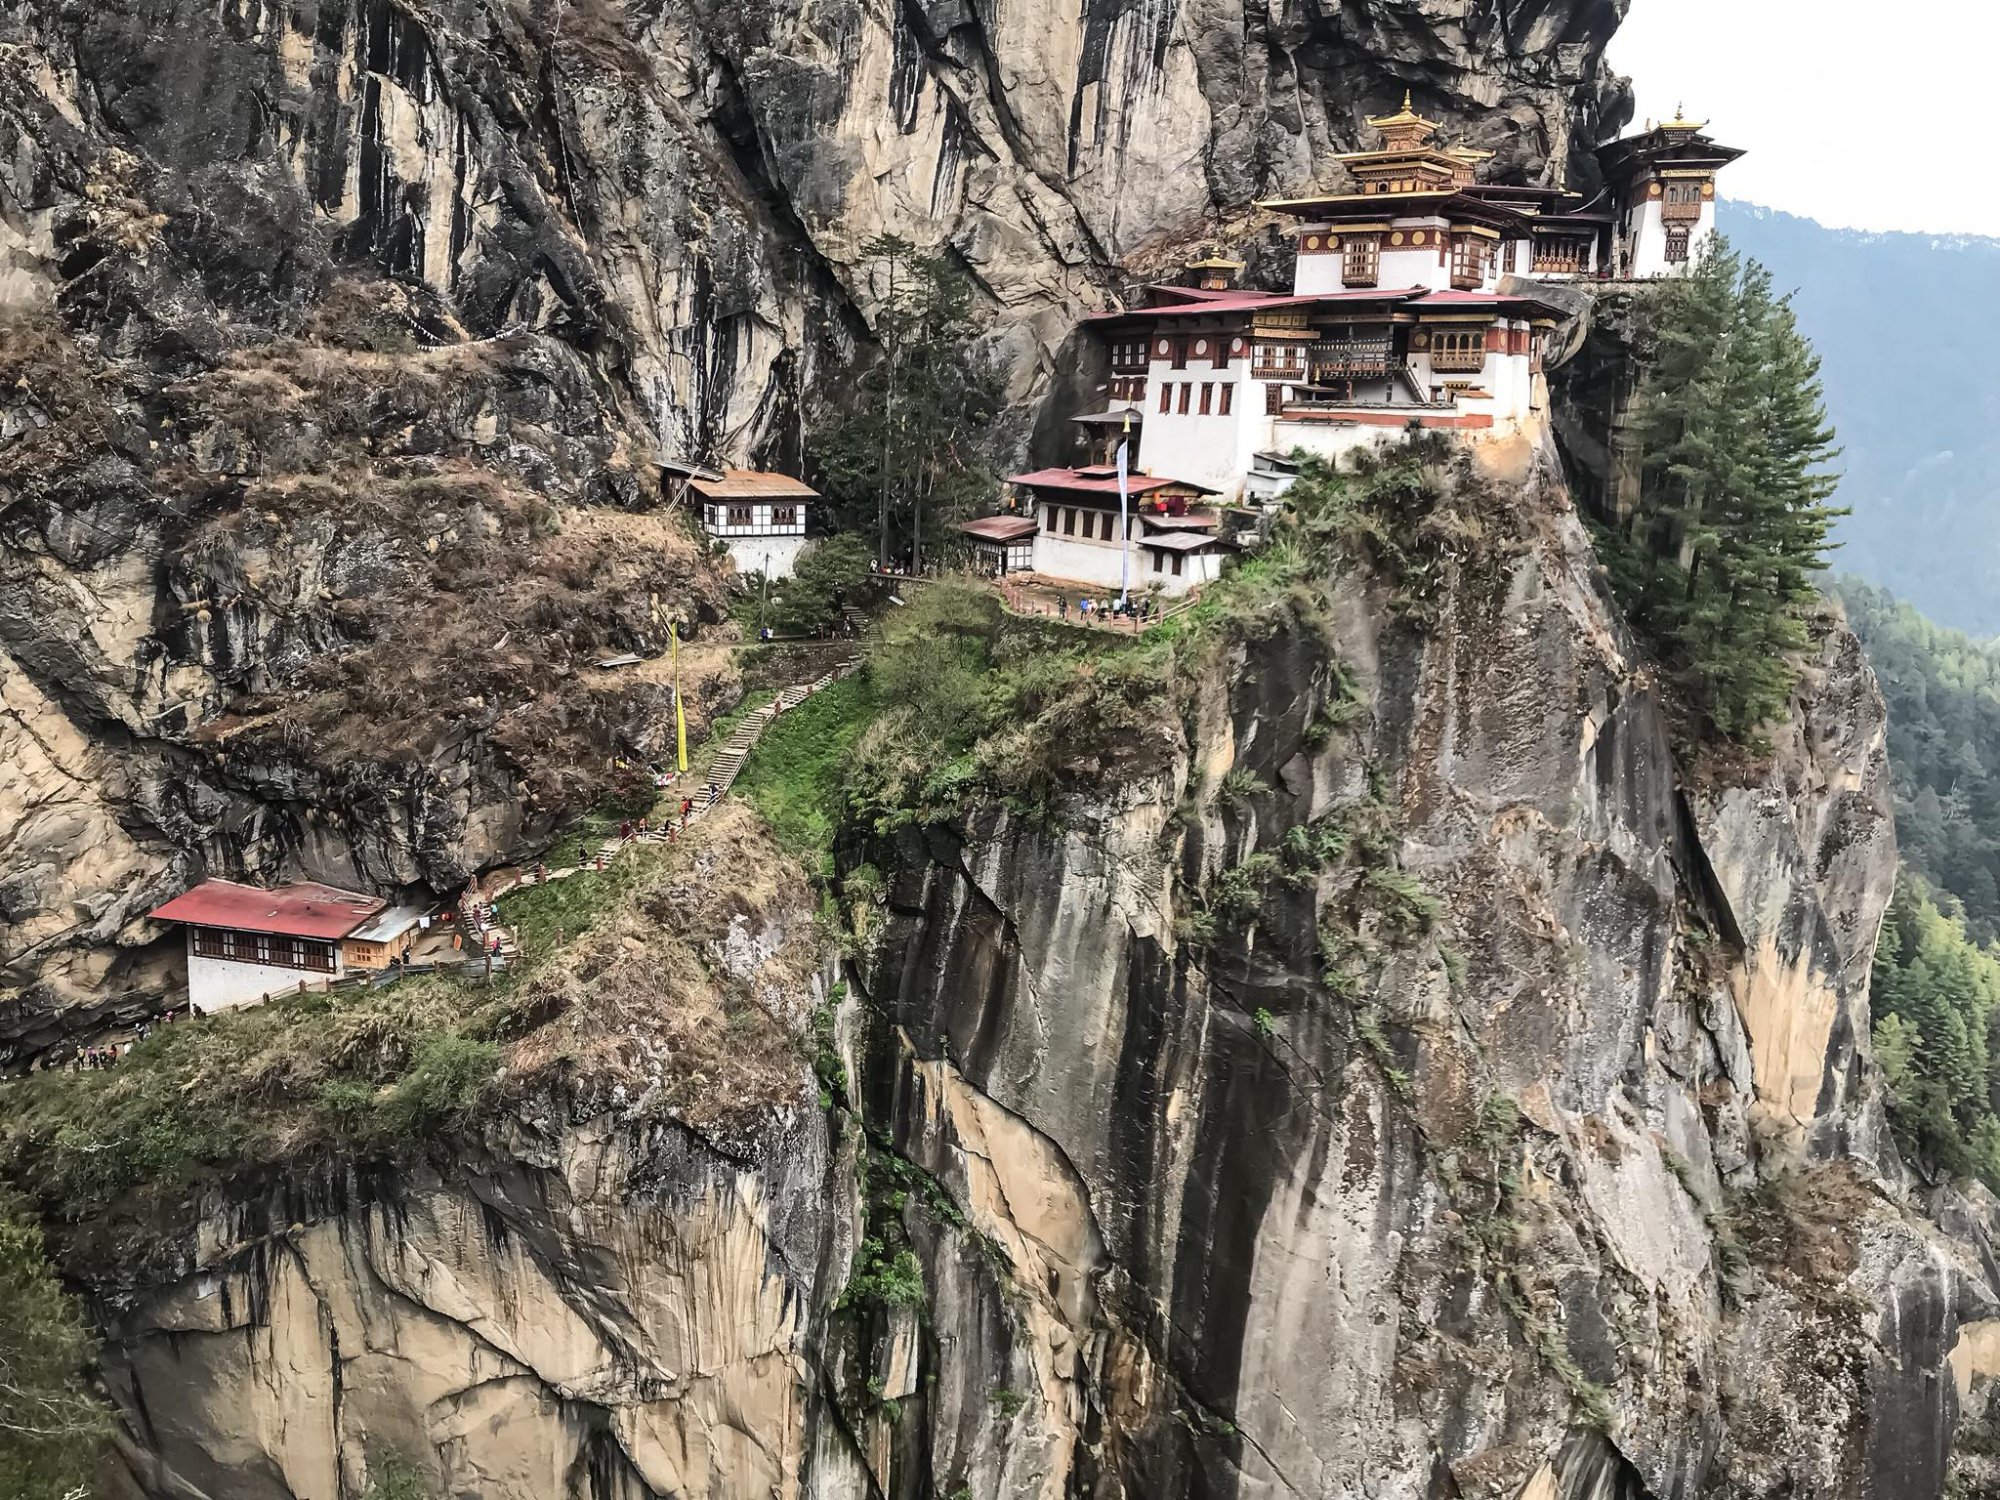 Du Lịch Bhutan: Phương Tiện, Tham Quan, Ăn Uống & Lưu Trú